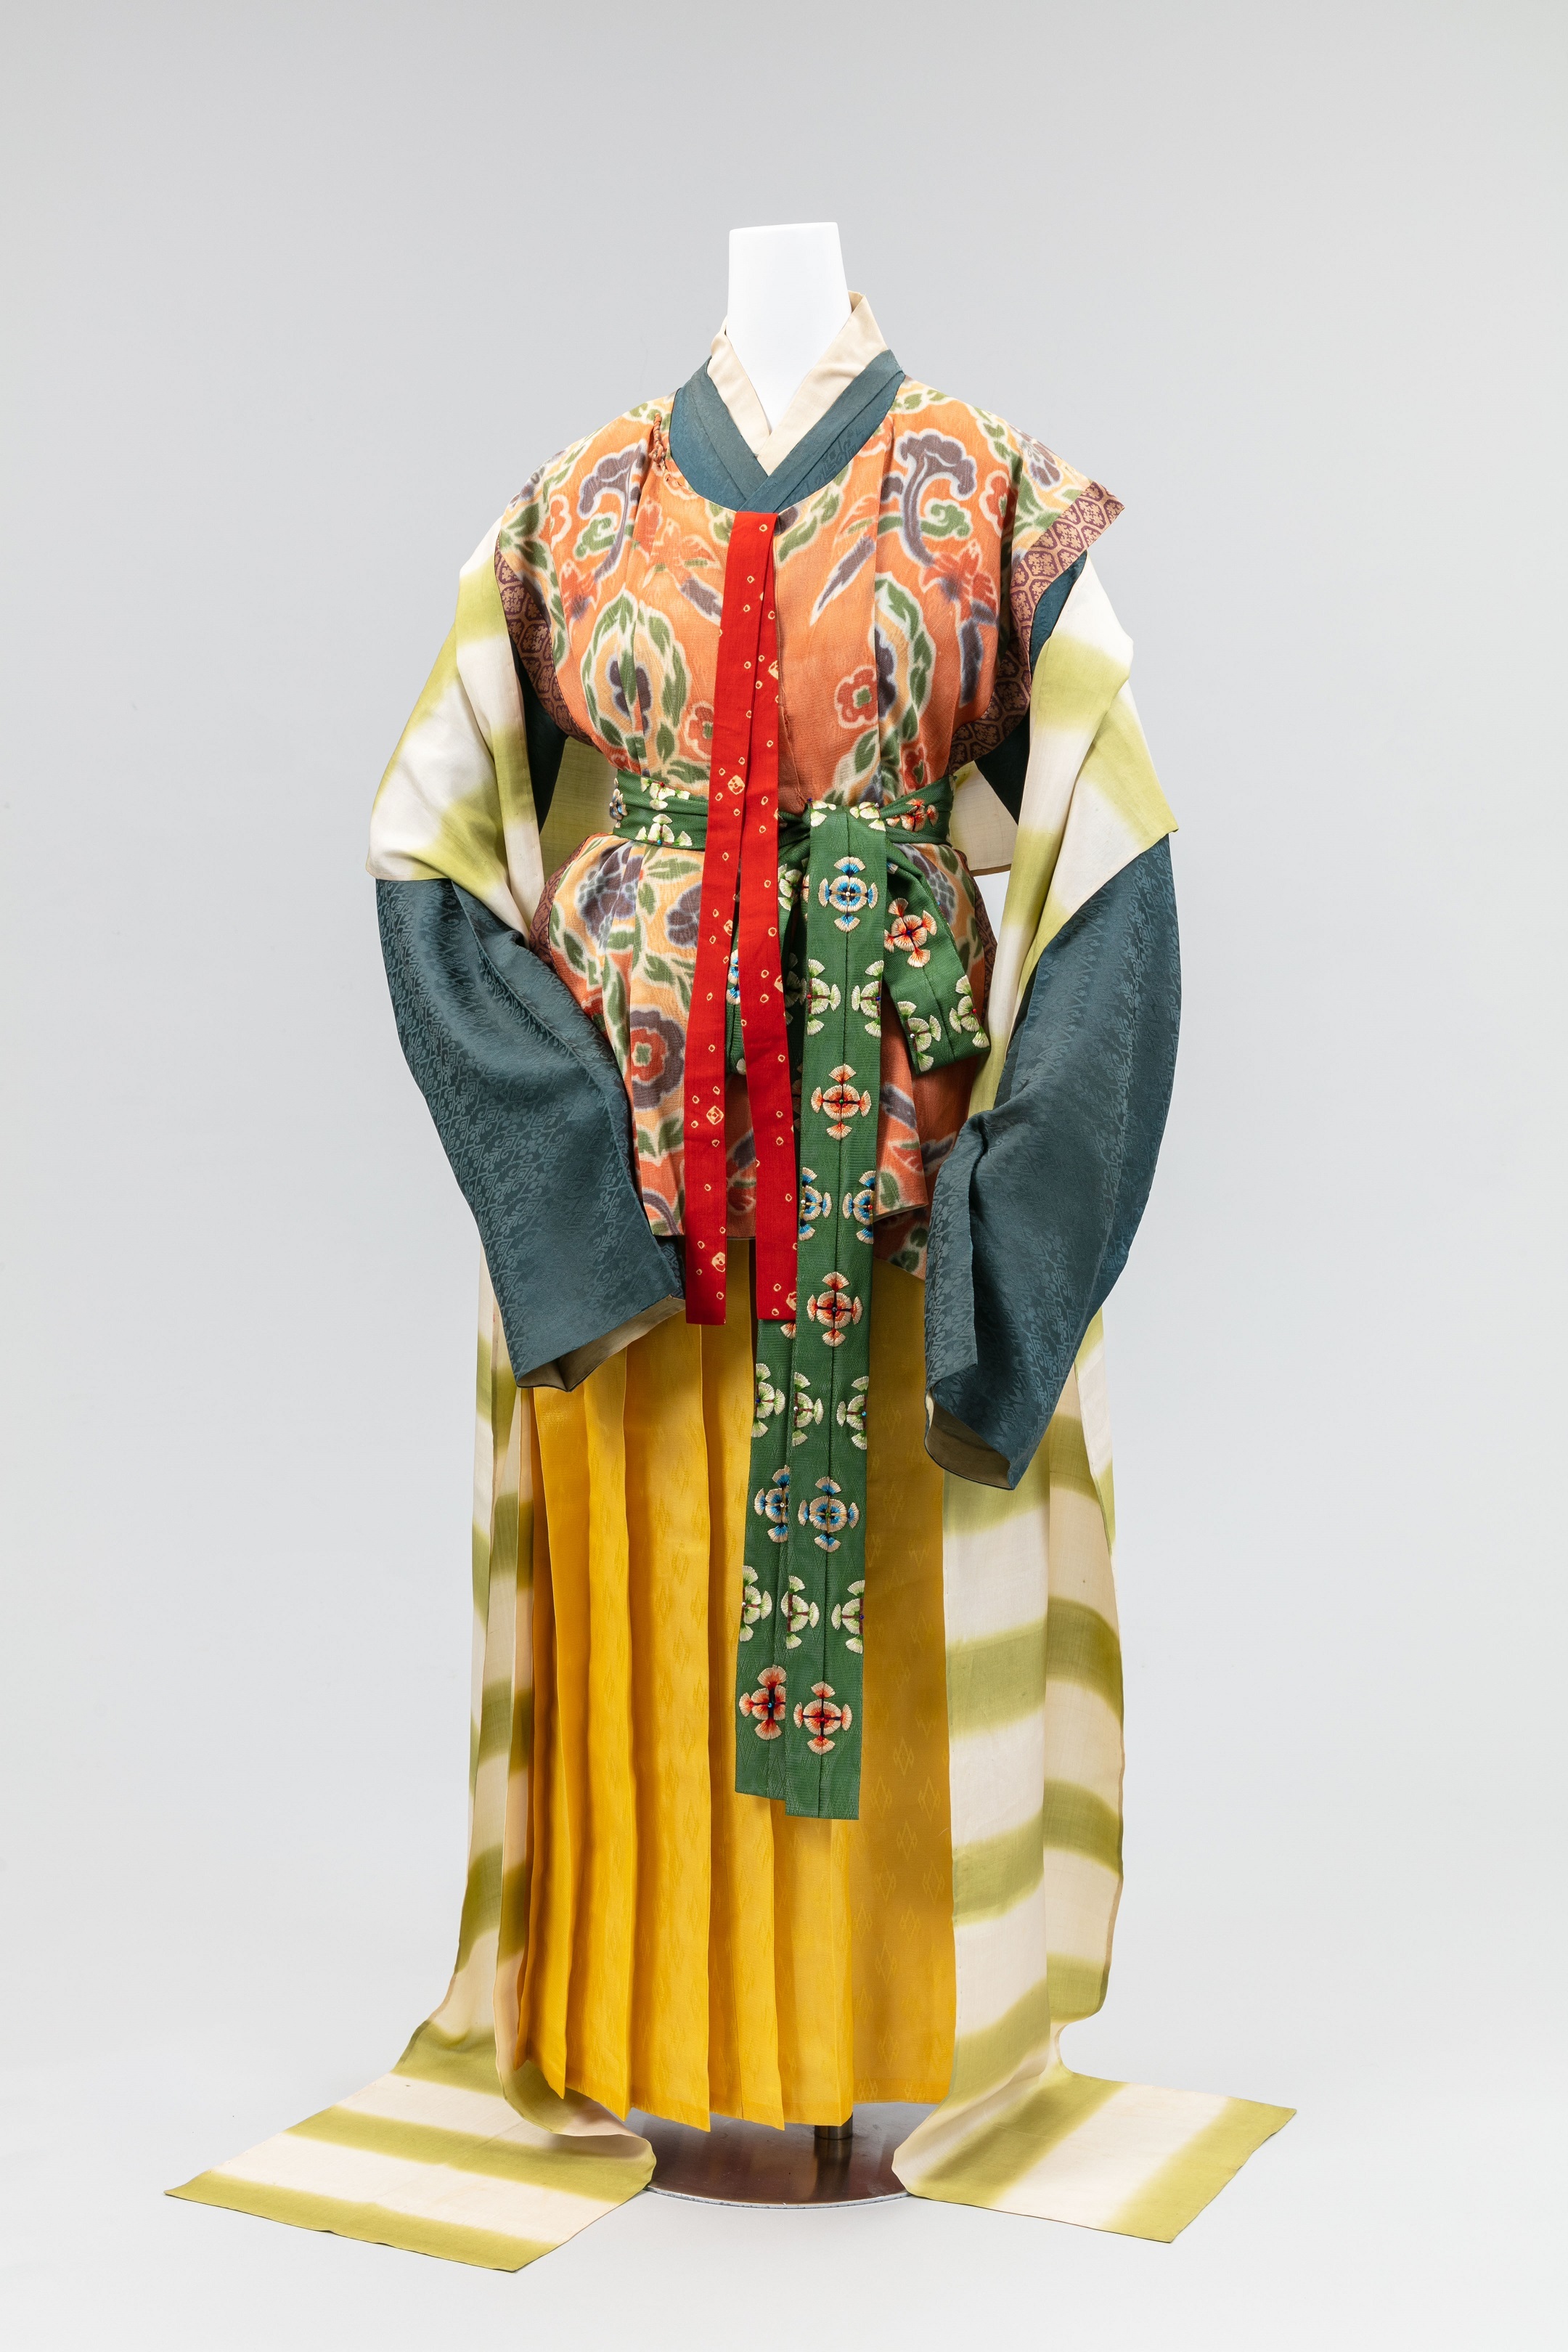 日本女性の衣服の移り変わりを巡る 再現 女性の服装1500年 京都の染織技術の粋 開催 古墳時代から明治時代初期までの女性の服装 21年7月15日 エキサイトニュース